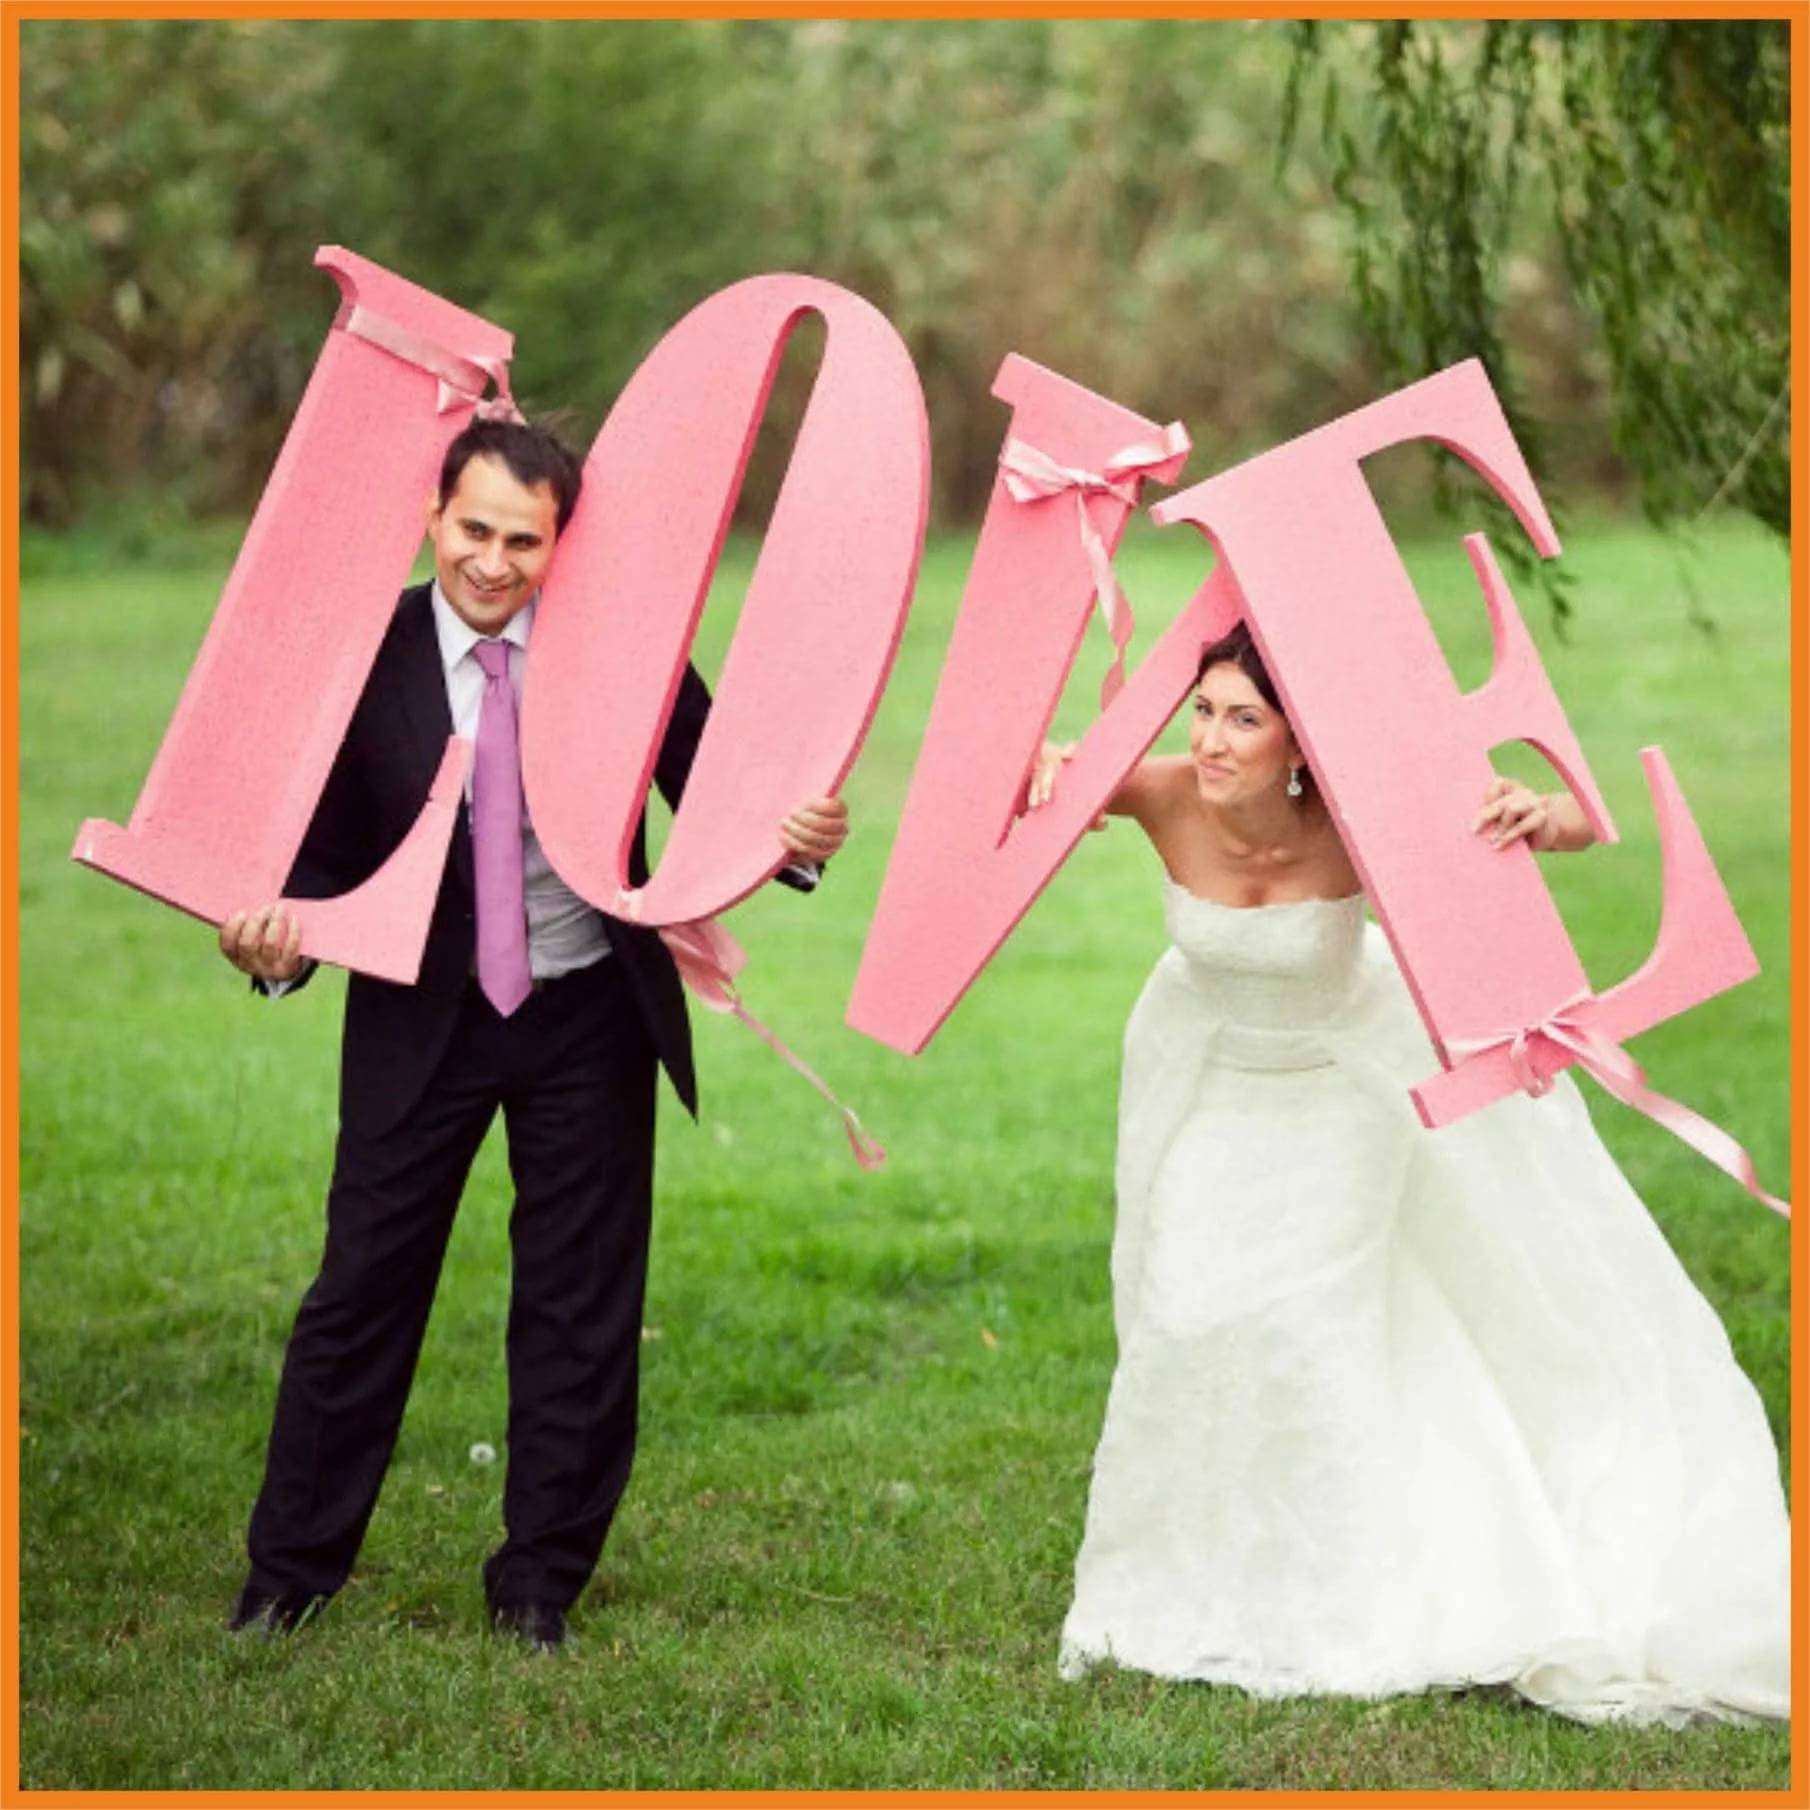 Объемные буквы своими руками — яркие акценты свадебной фотосессии